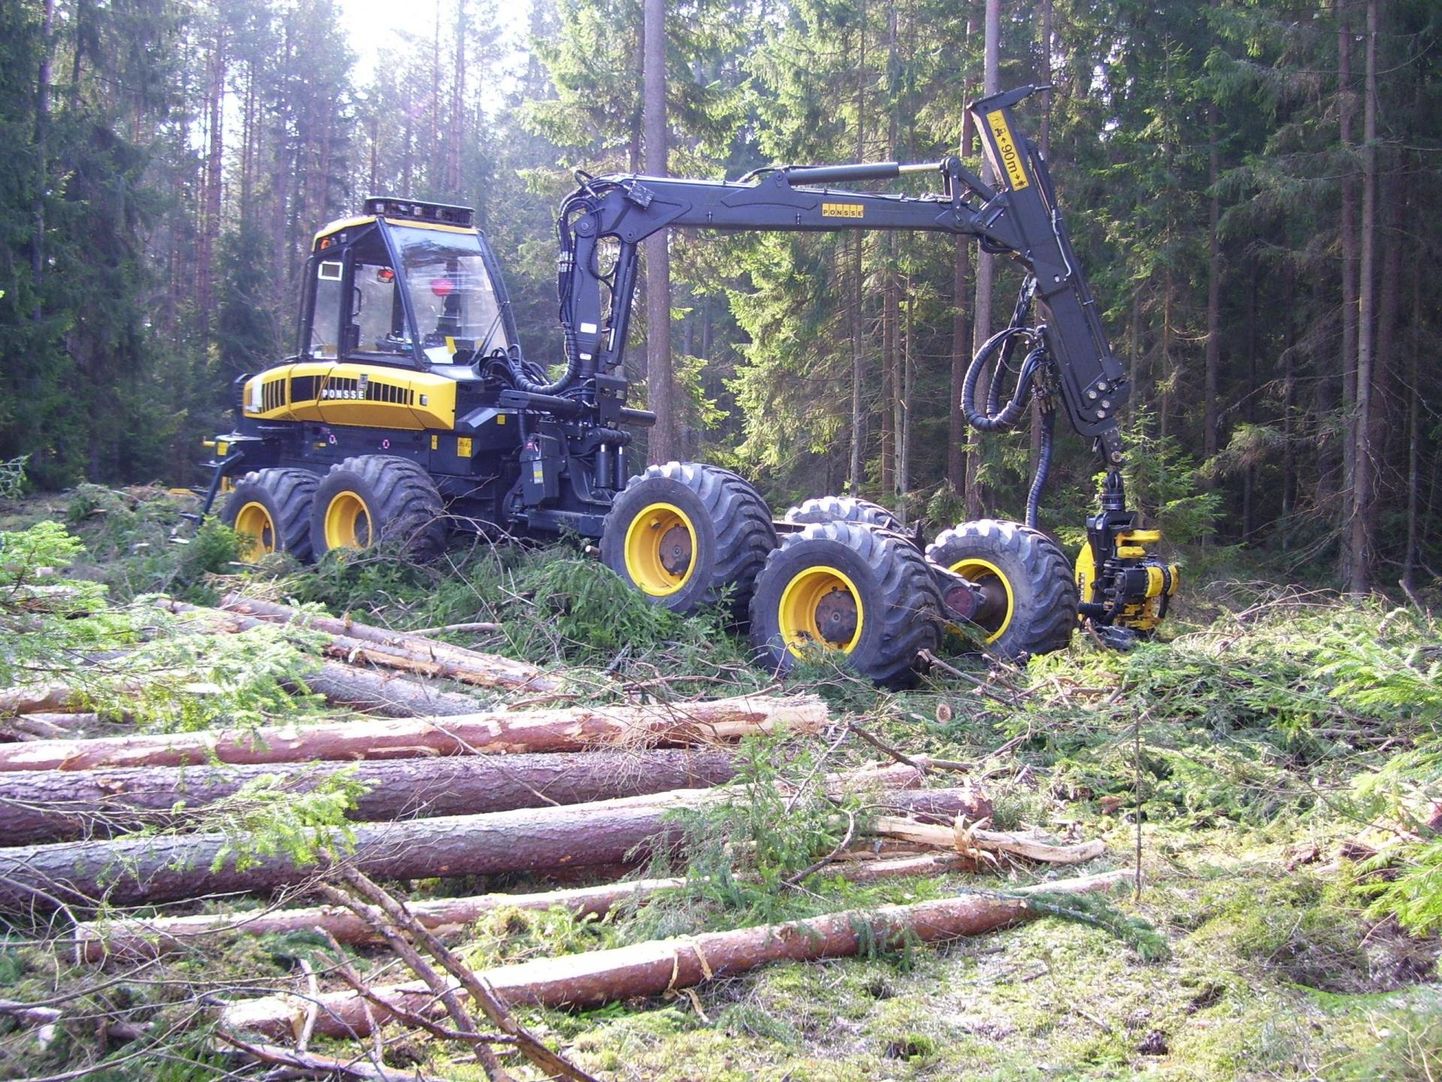 Soome perefirmas valmivad Ponsse Buffalo Duali mudelid on ehitatud nii, et soovi korral saab metsalangetustraktori muuta kiiresti väljavedajaks ja vastupidi. Selline lahendus sobib kasutajale, kelle raiekogus pole kuigi suur.